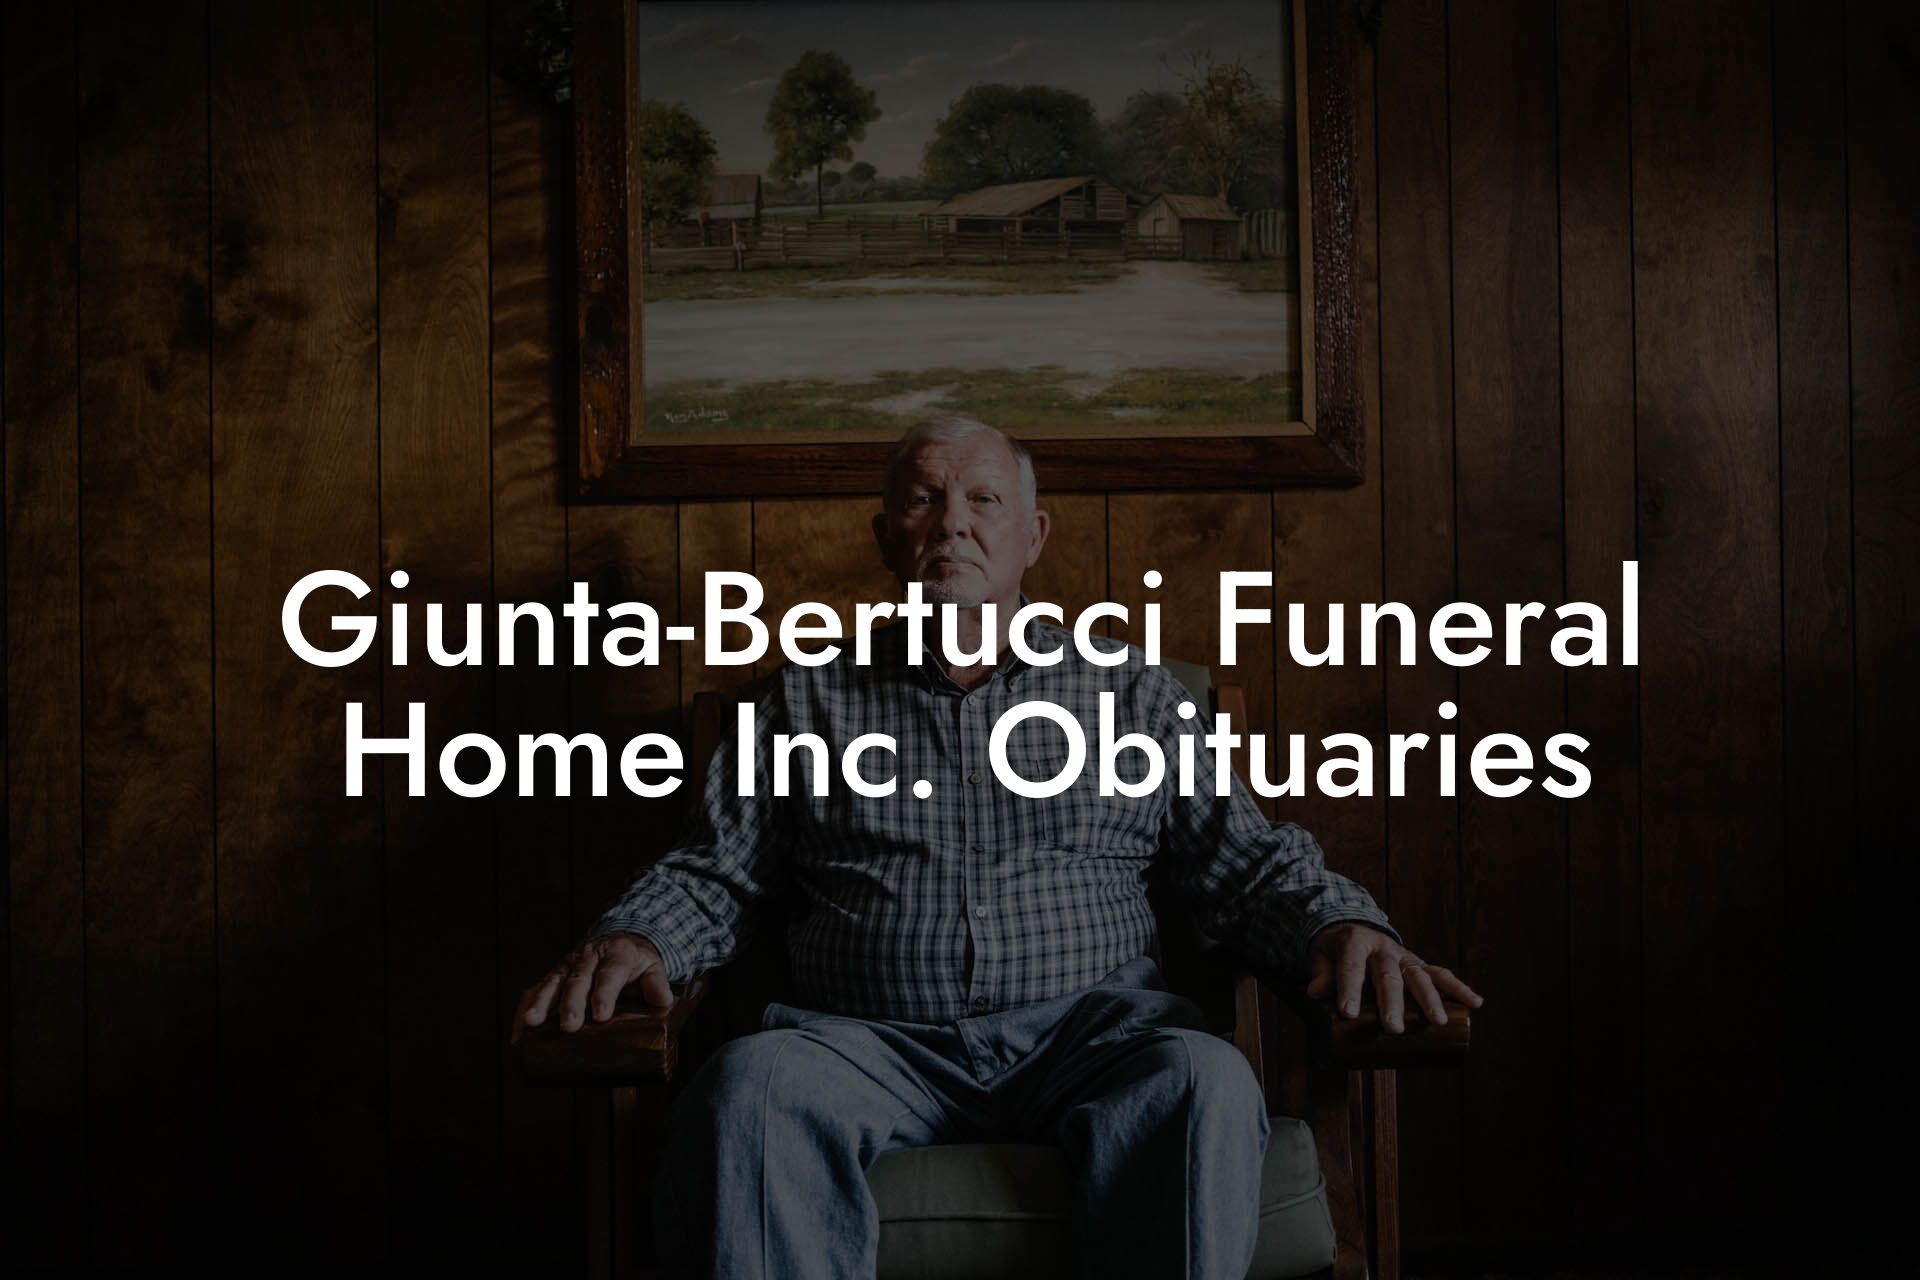 Giunta-Bertucci Funeral Home Inc. Obituaries